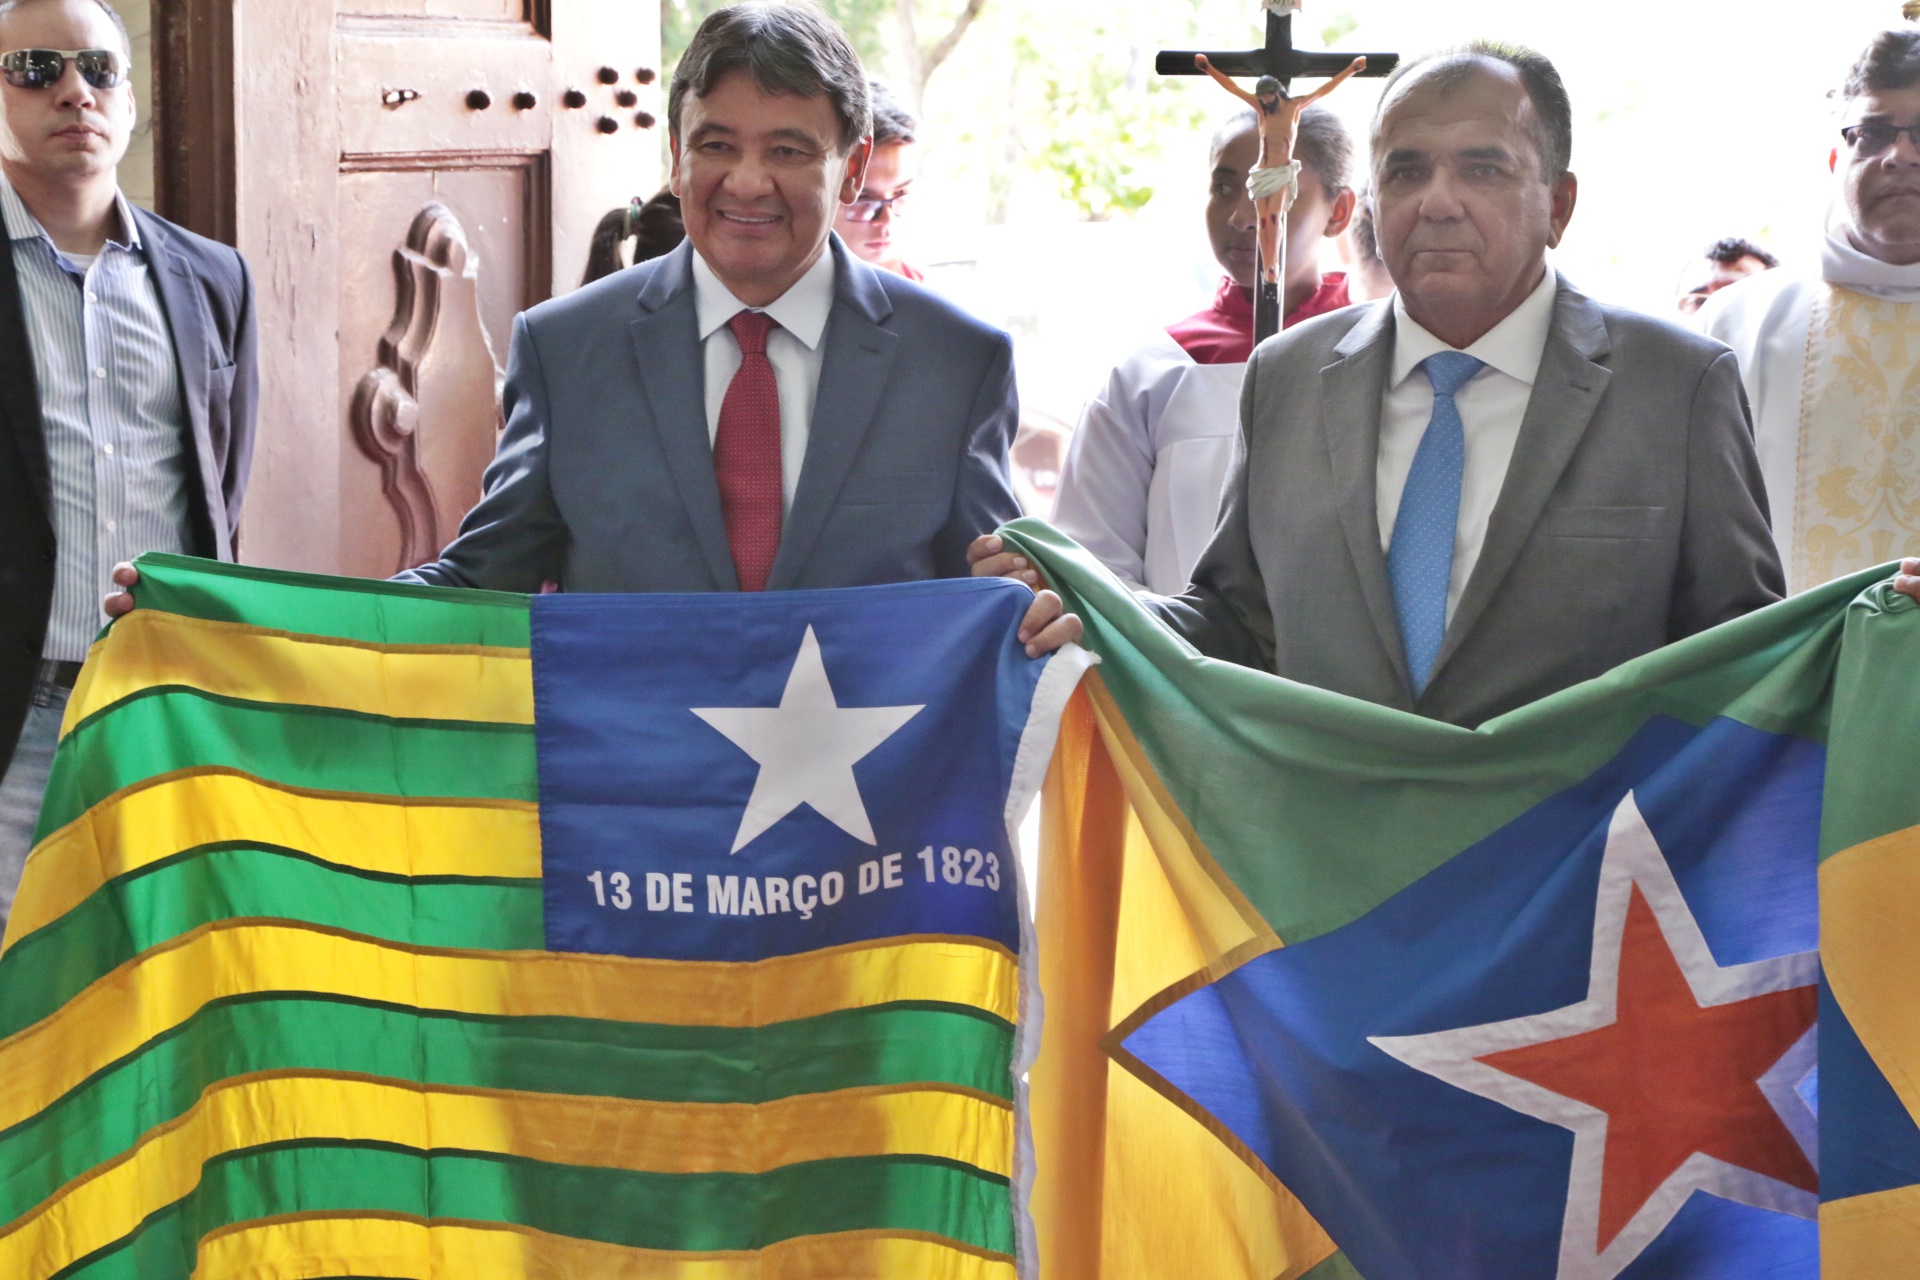 Wellington Dias carrega bandeira do Piauí ao lado do prefeito de Piracuruca, Raimundo Alves